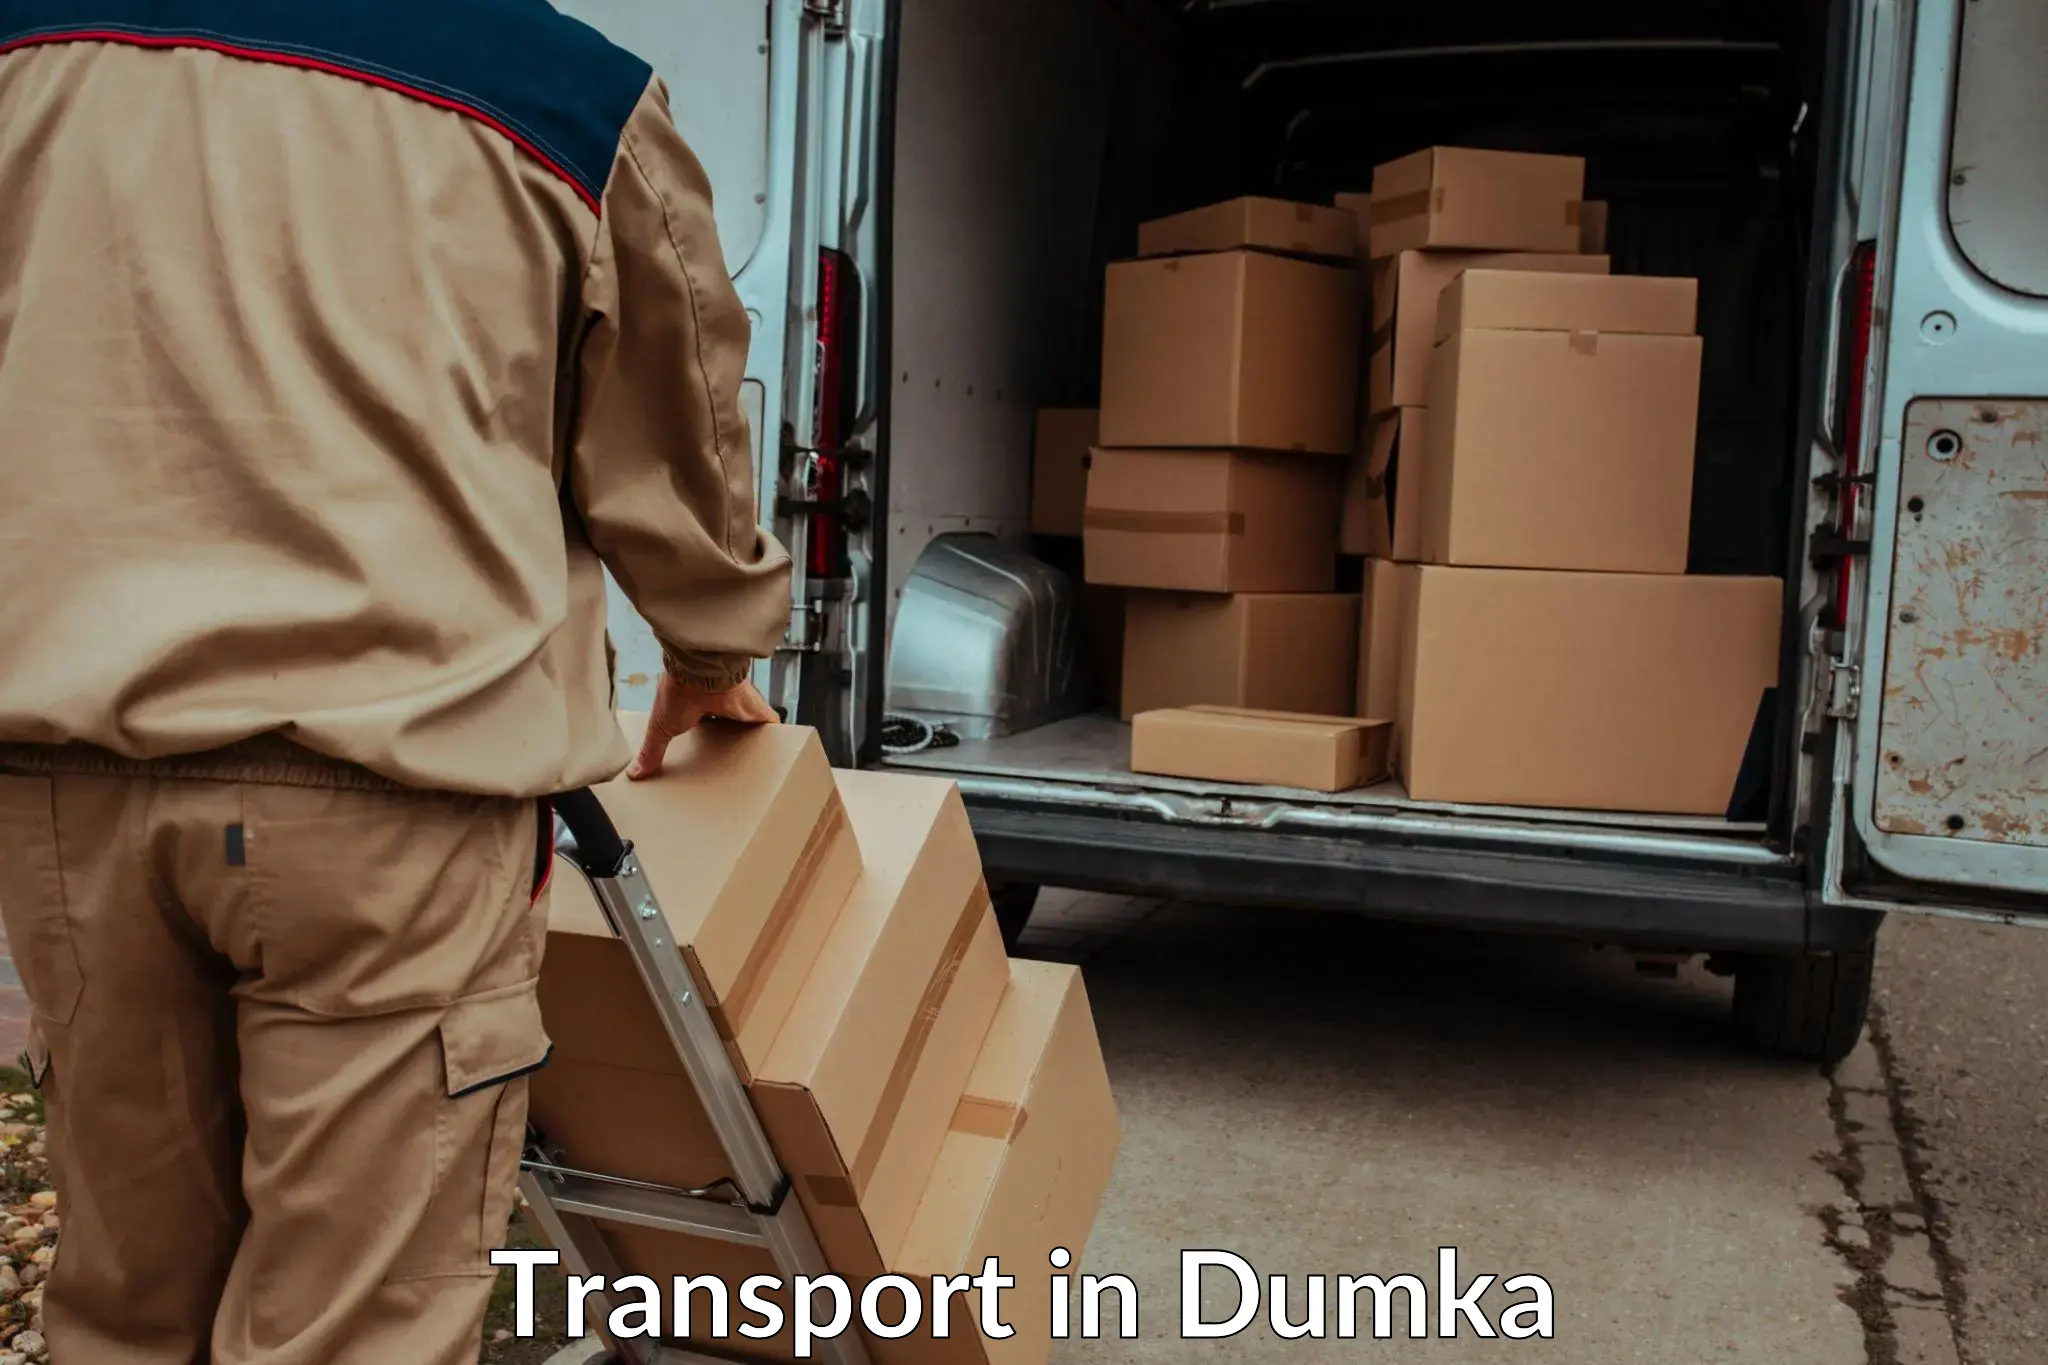 Parcel transport services in Dumka